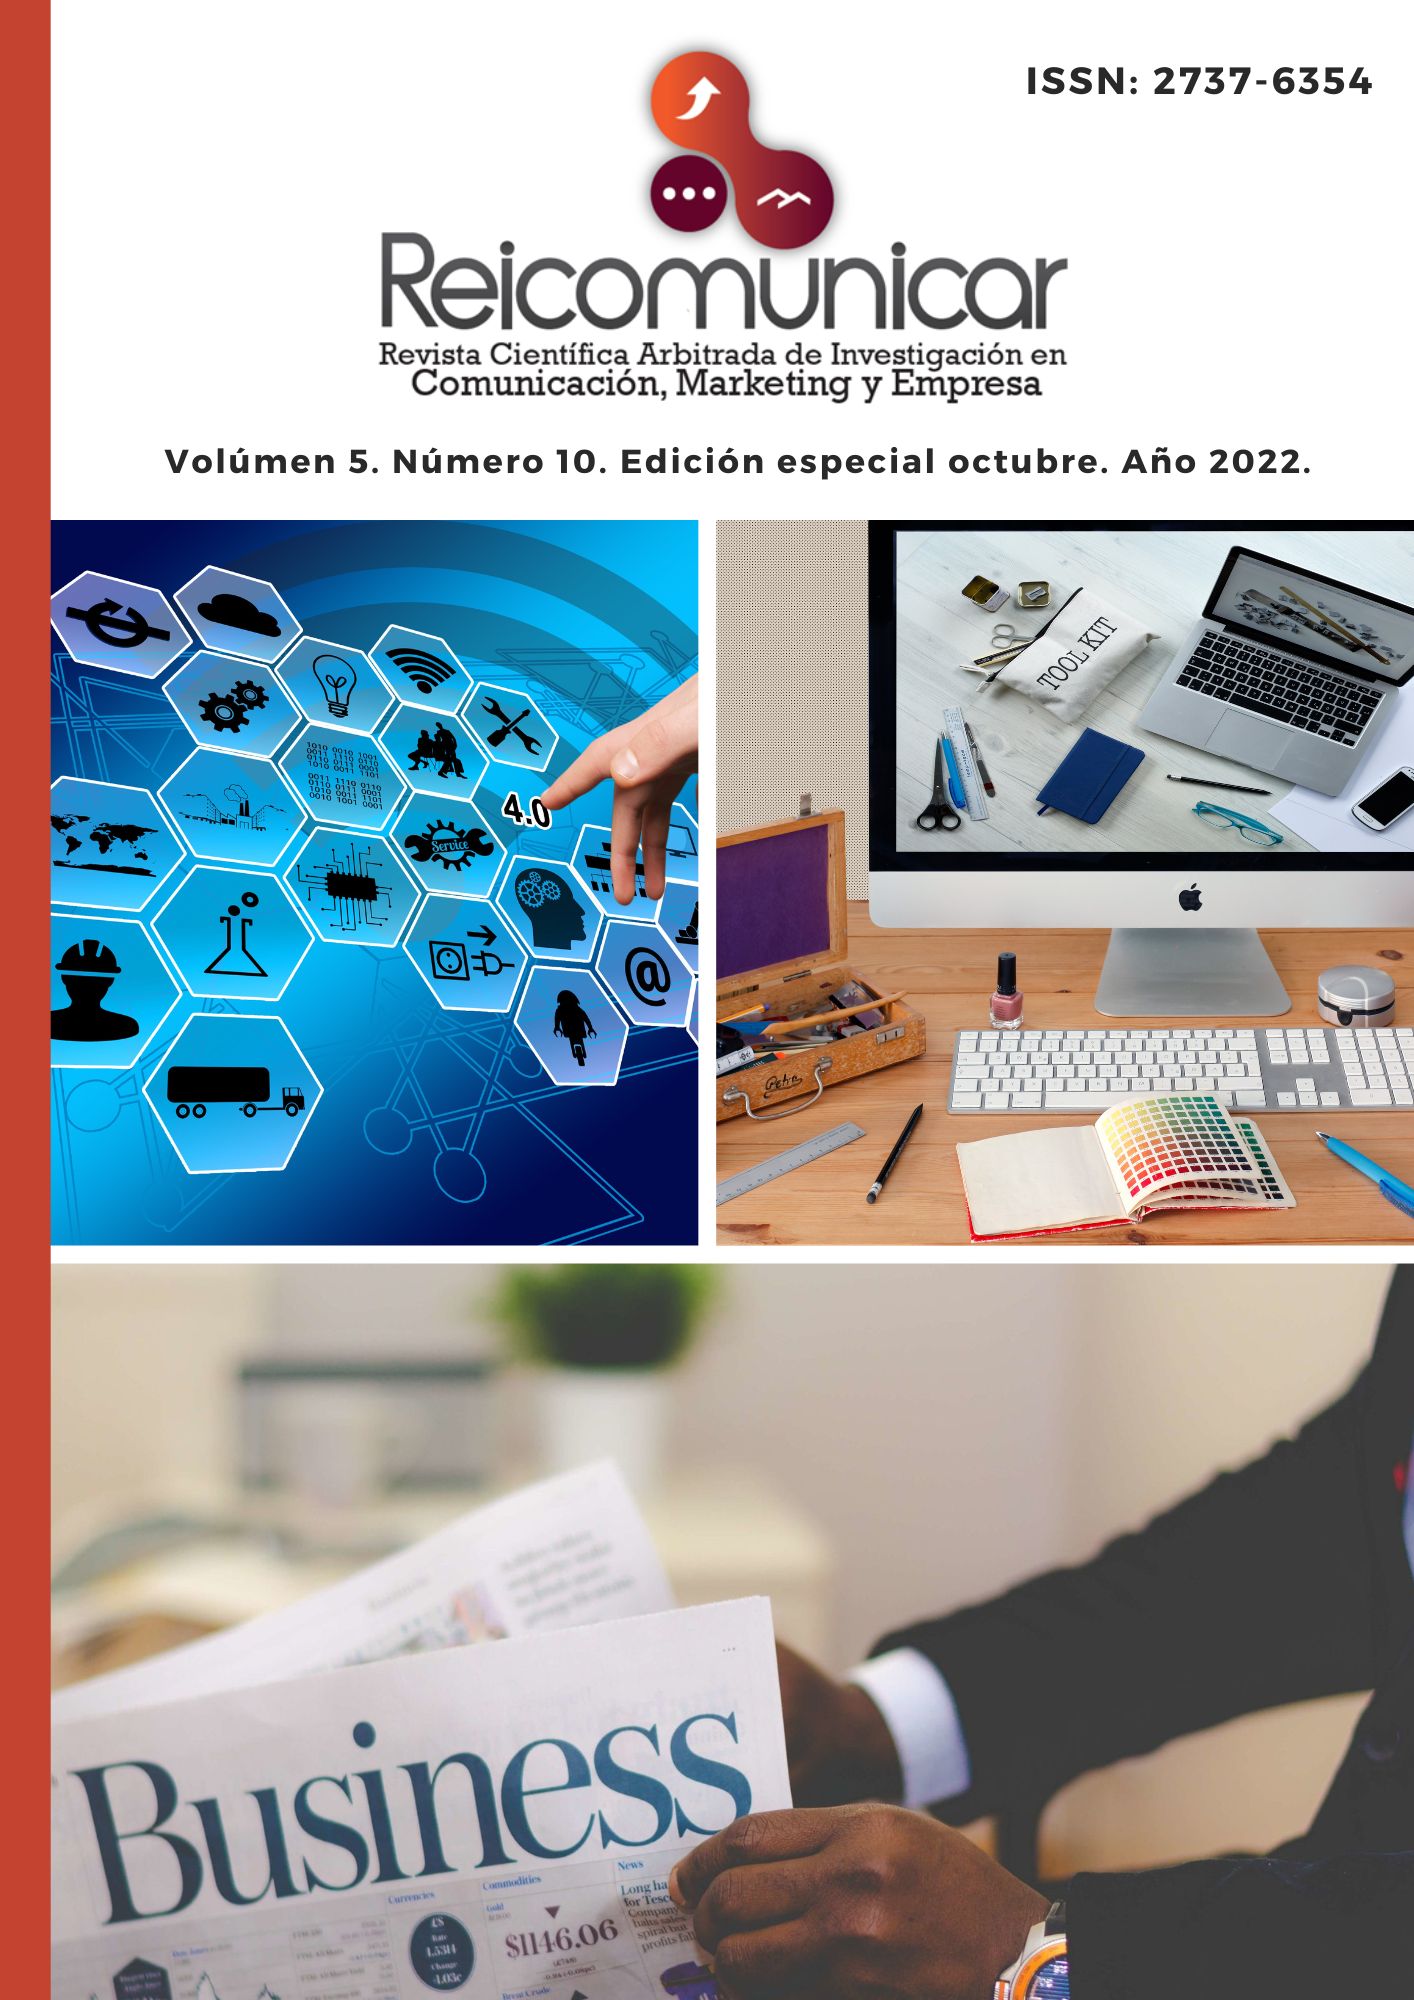 					Ver Vol. 5 Núm. 10 Ed. esp. (2022):  Revista Científica Arbitrada de Investigación en Comunicación, Marketing y Empresa REICOMUNICAR. (Edición especial octubre 2022)
				